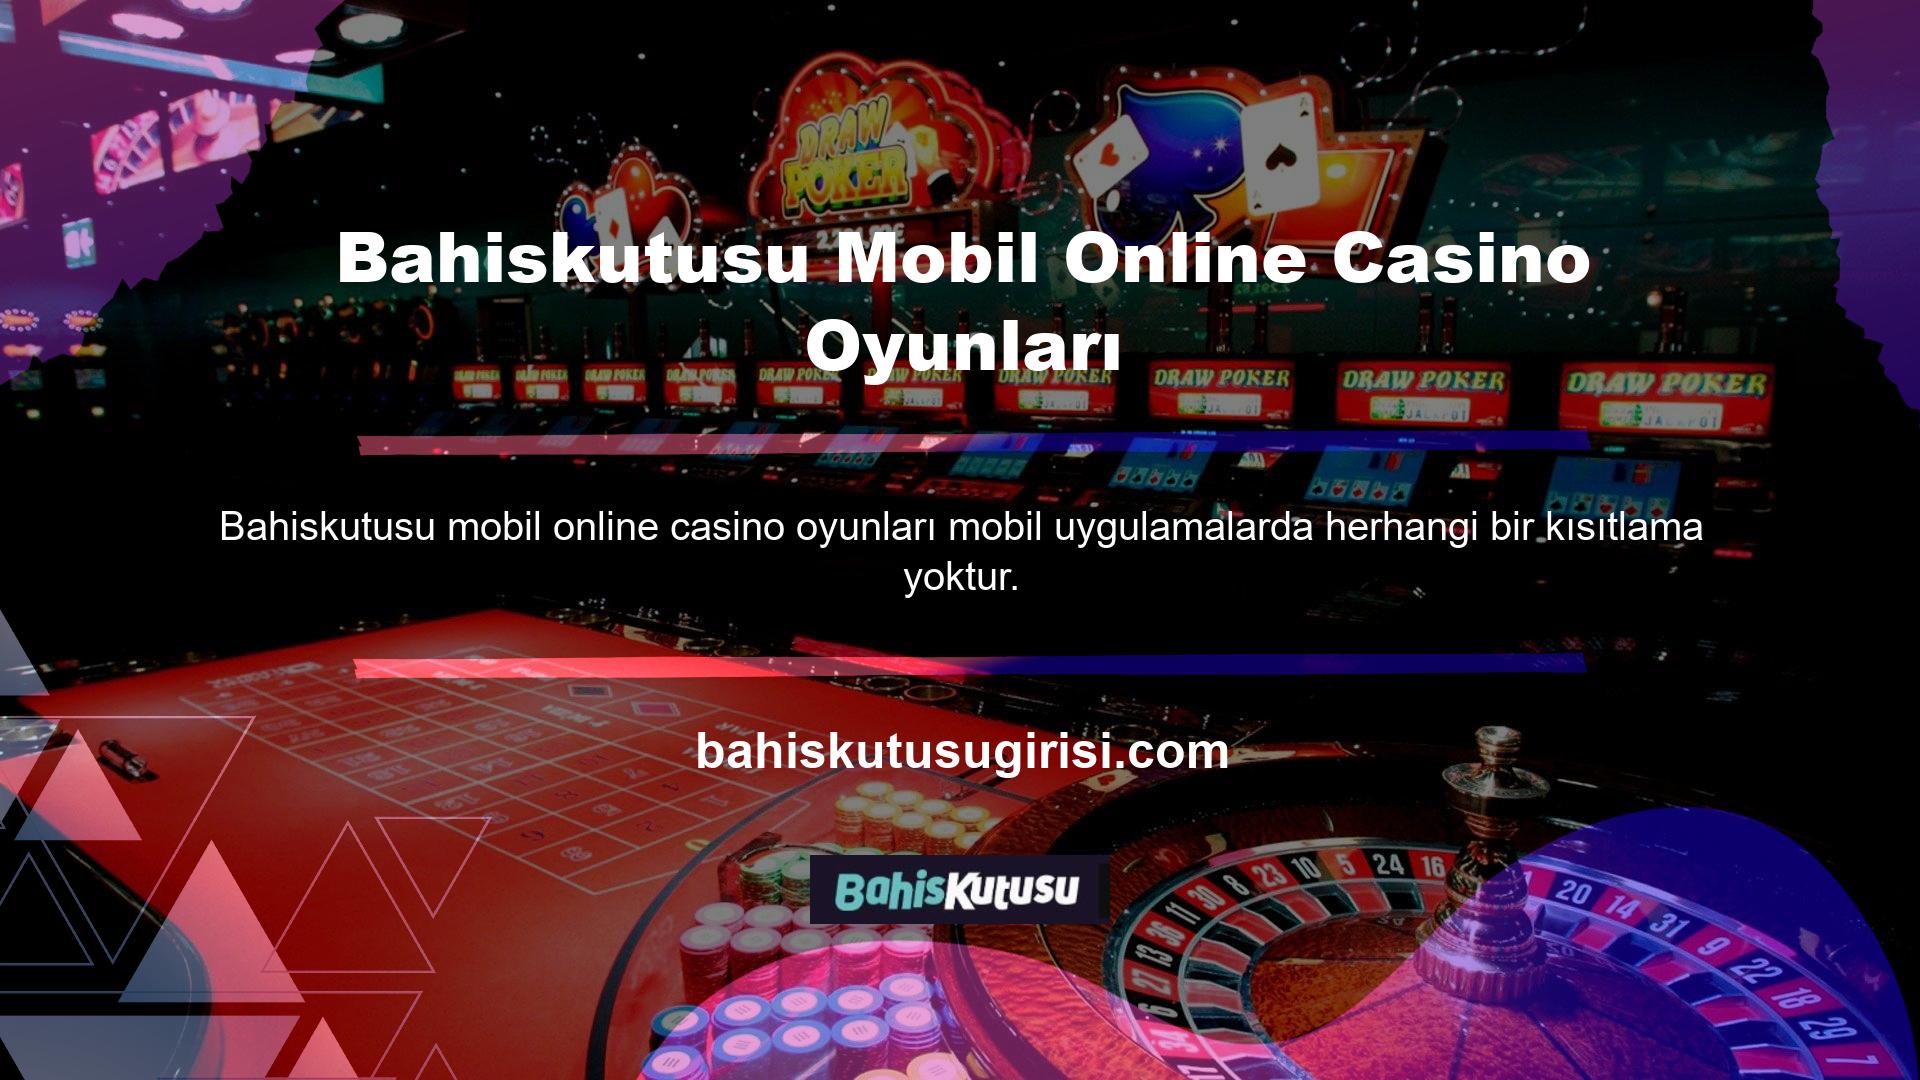 Bahiskutusu Mobil Online Casino Oyunları Casinolar mobil cihazlarda oynanabilir mi Elbette her türlü oyun tıpkı mobil oyunlar gibi çalışır